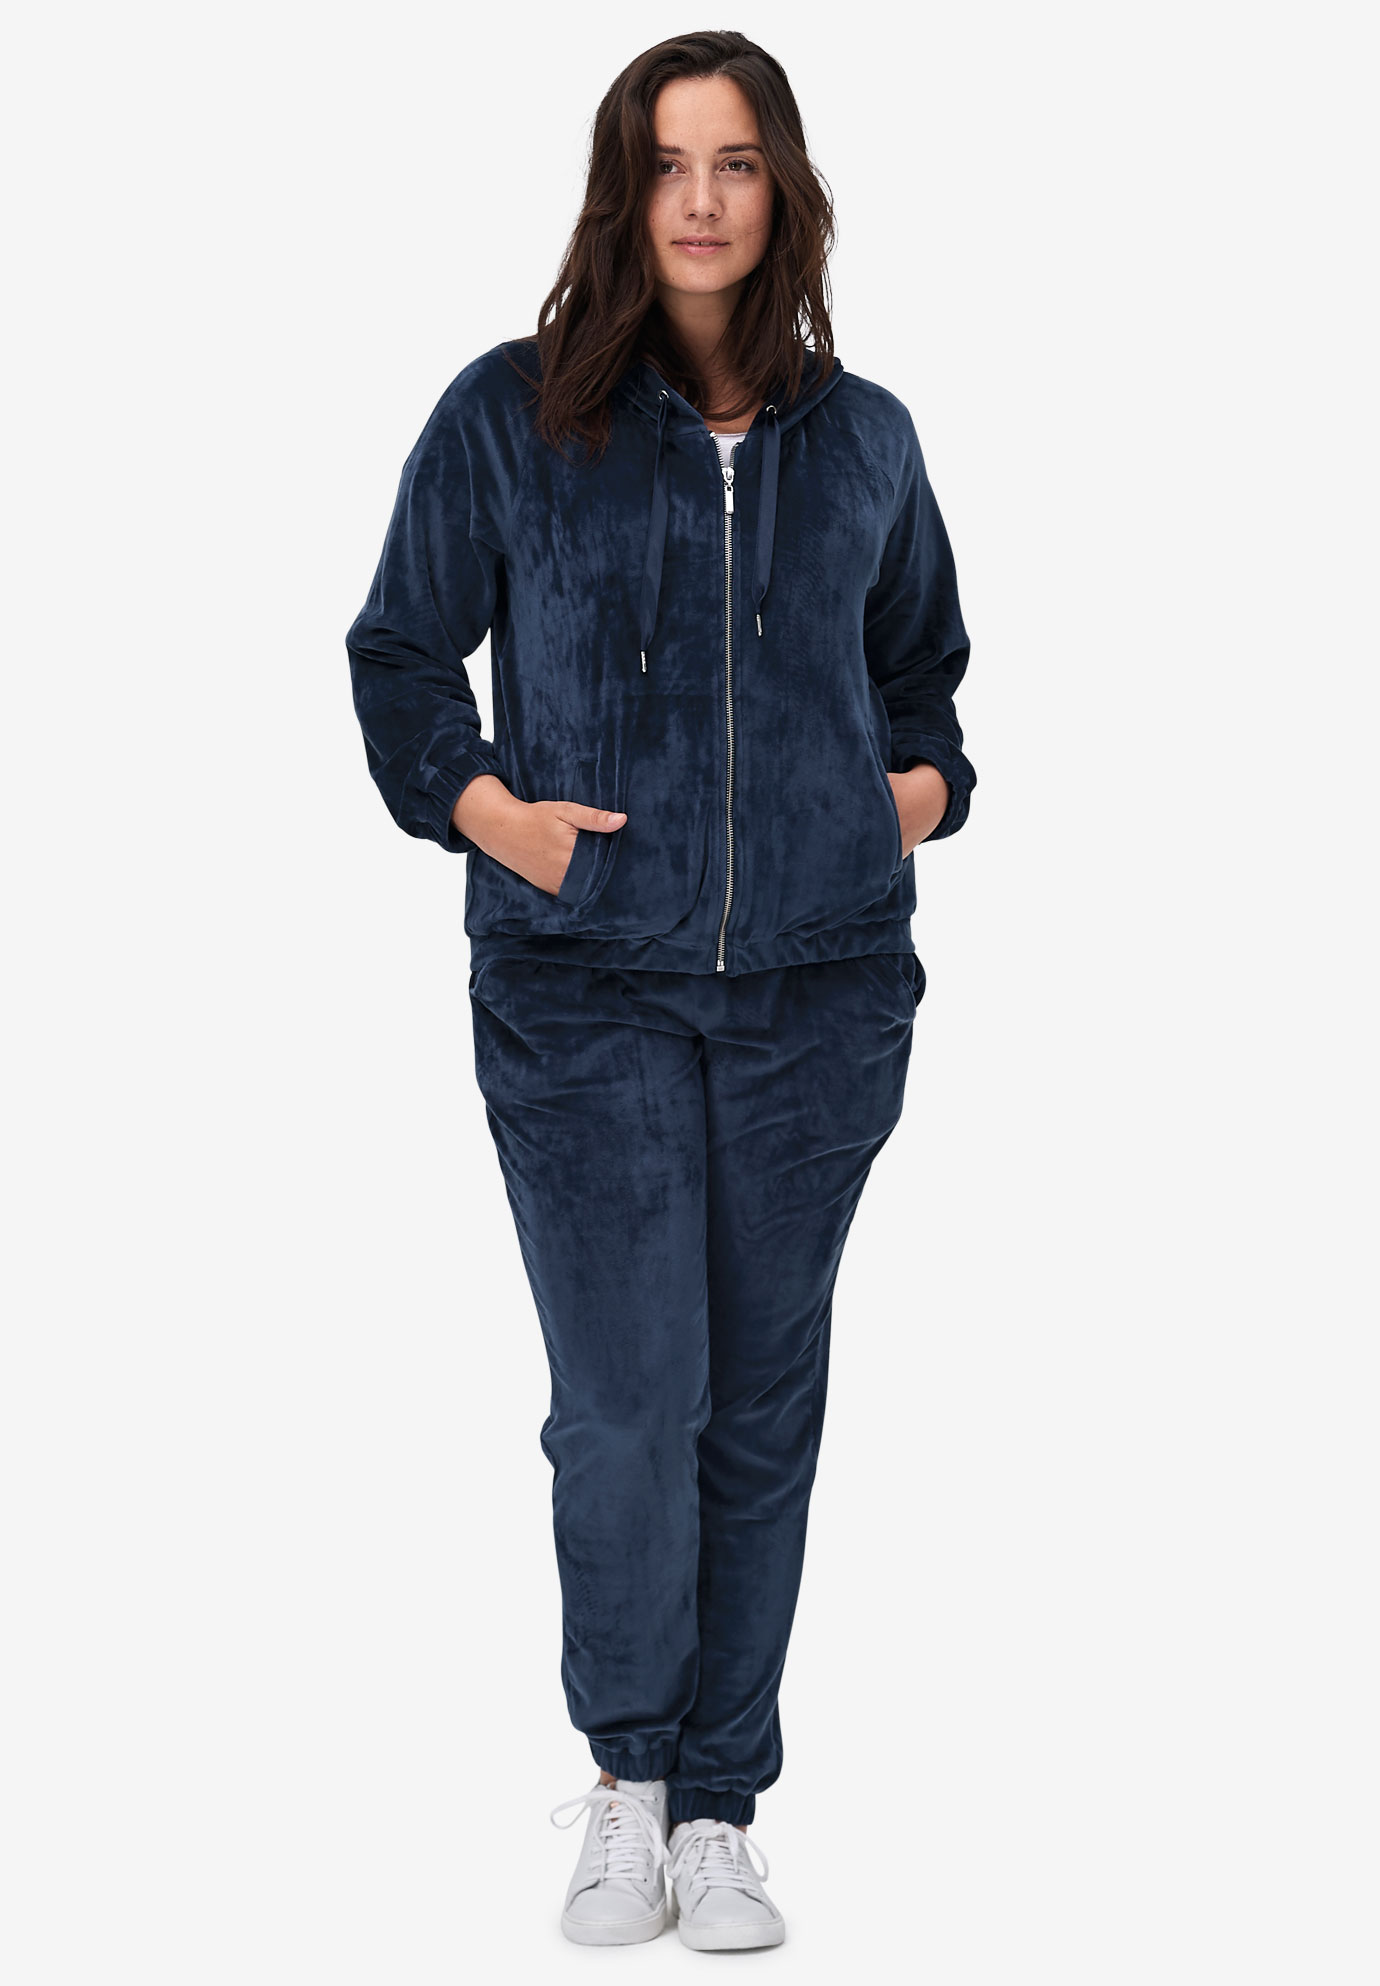 YUNY Women Mid-Long Warm Zip Up Hoode Velvet Relaxed Outwear Jacket Pattern1 XS 